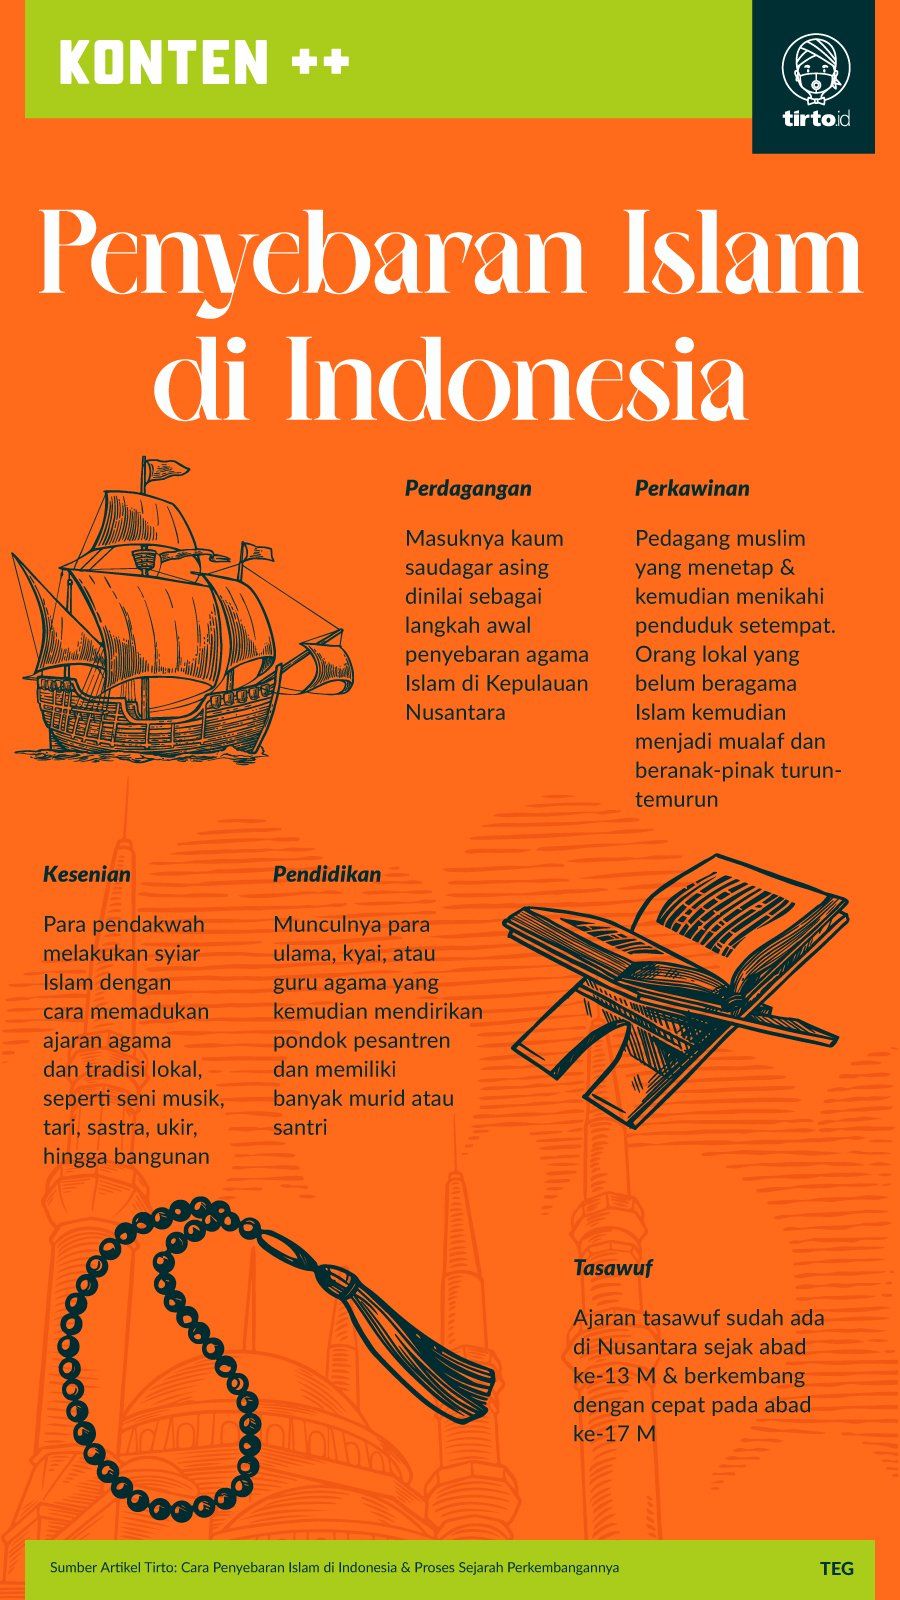 Proses islamisasi di indonesia berlangsung secara damai melalui